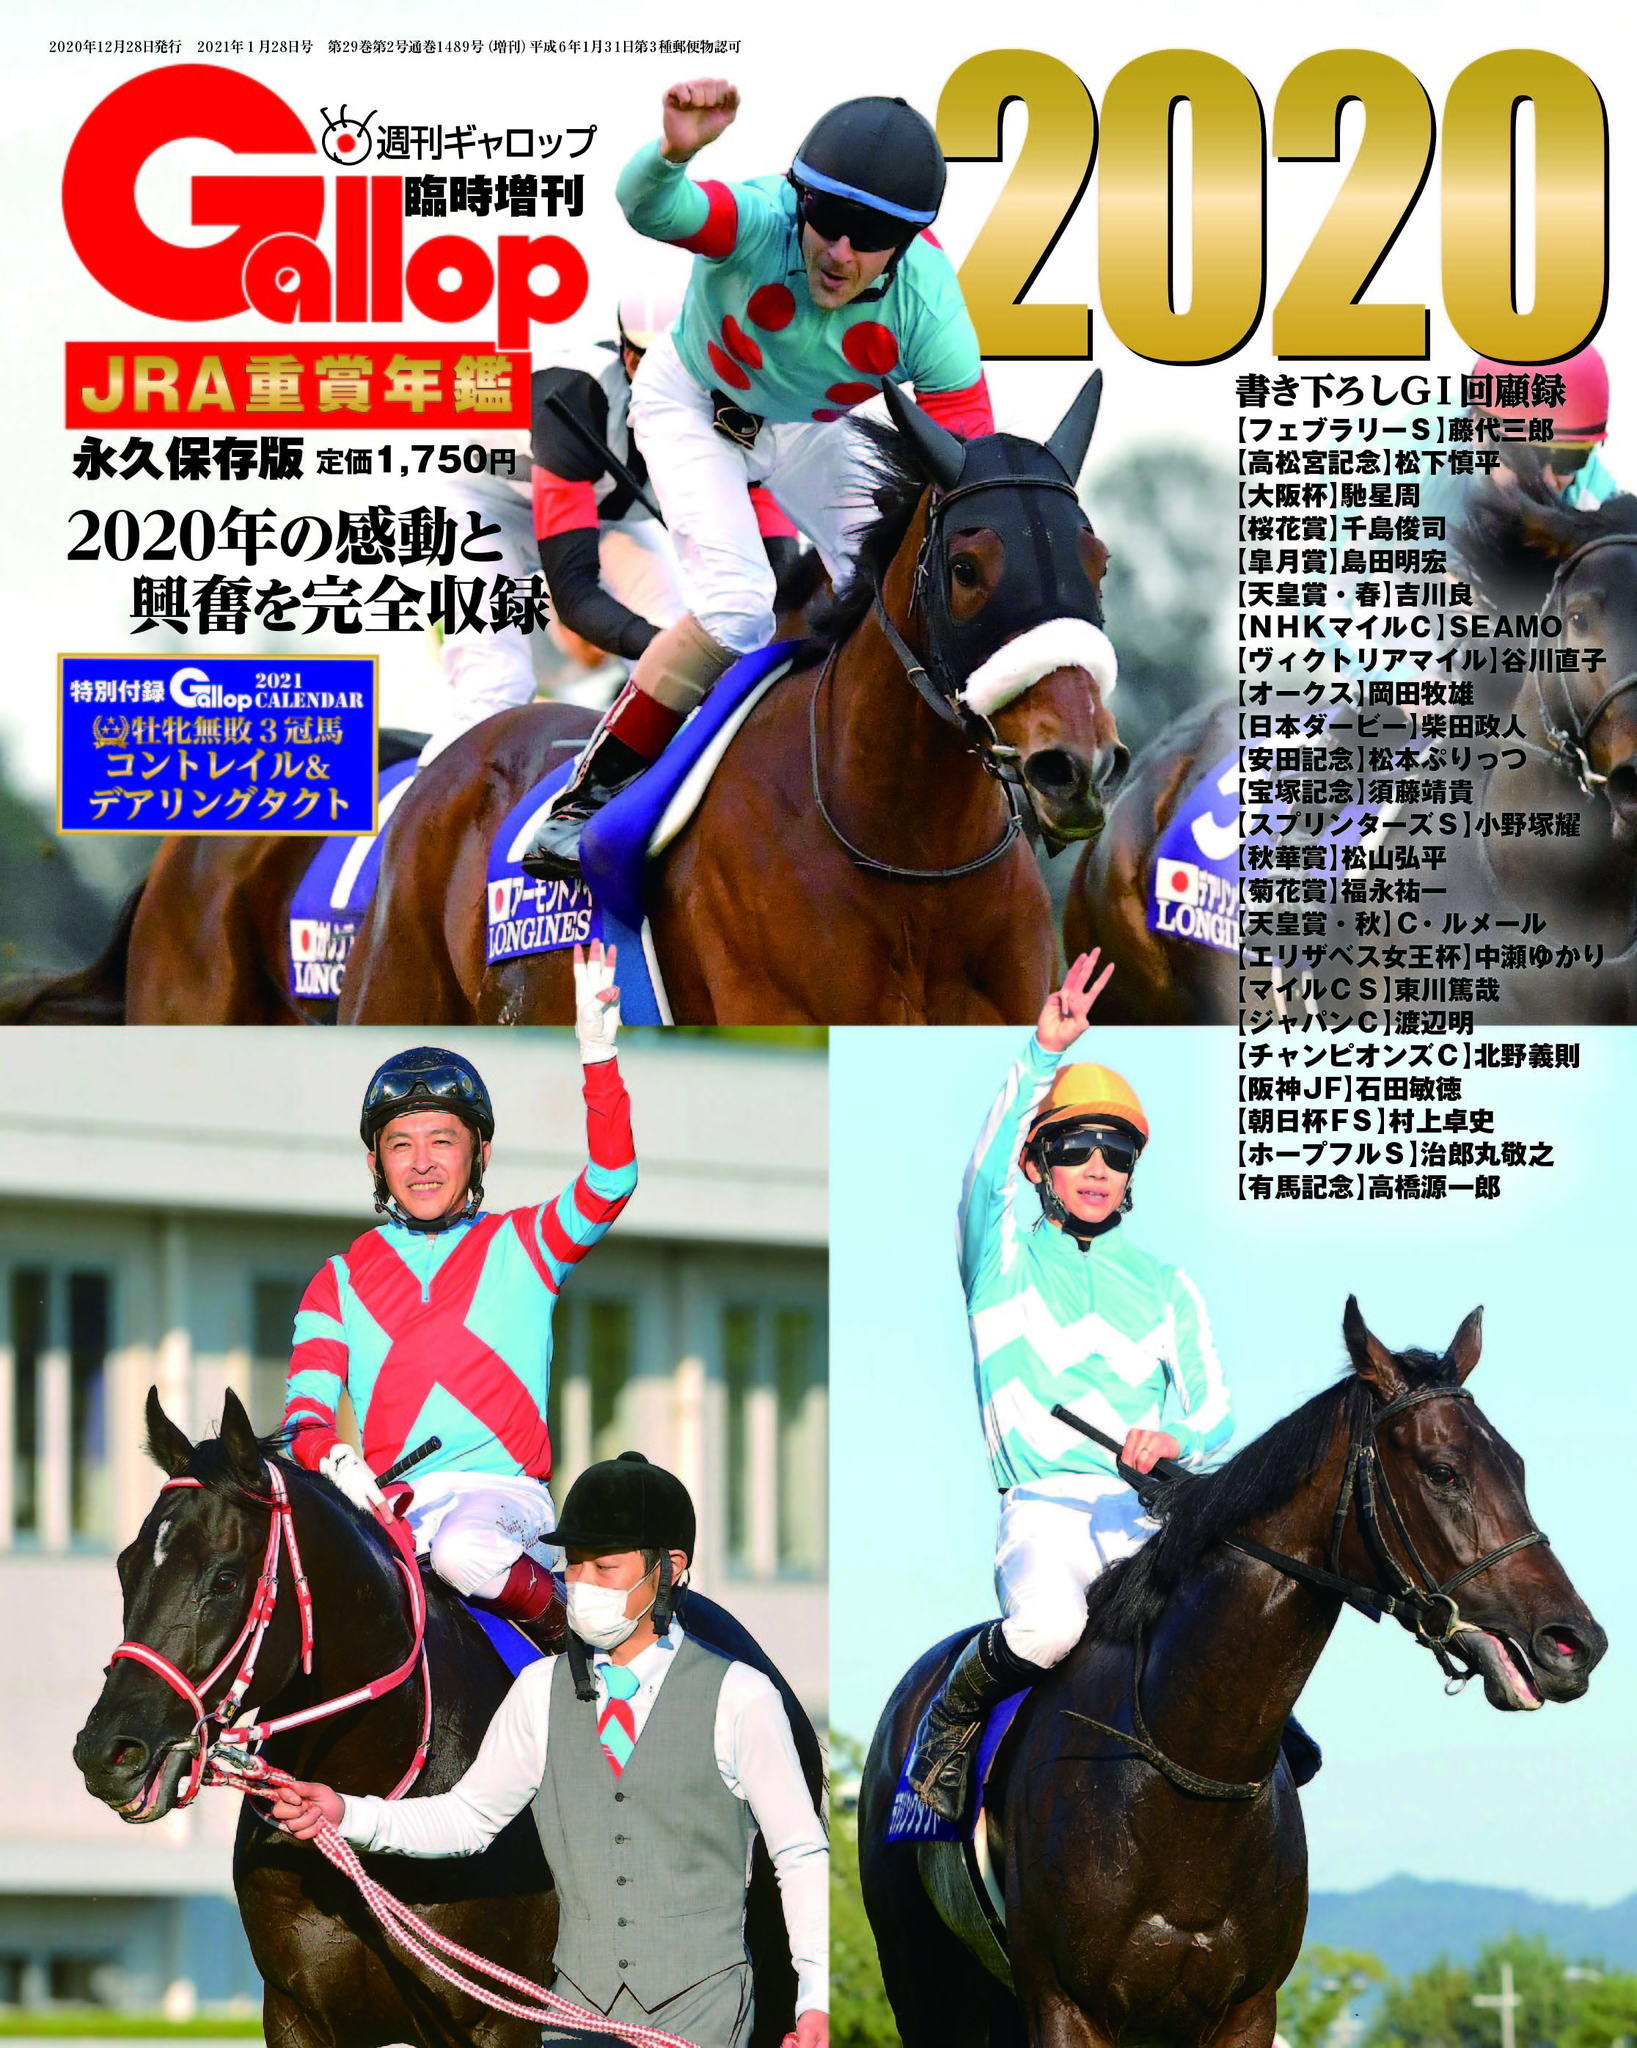 あなたにおすすめの商品 最新号 週刊ギャロップ 2023 6日号 Gallop 競馬 雑誌 JRA